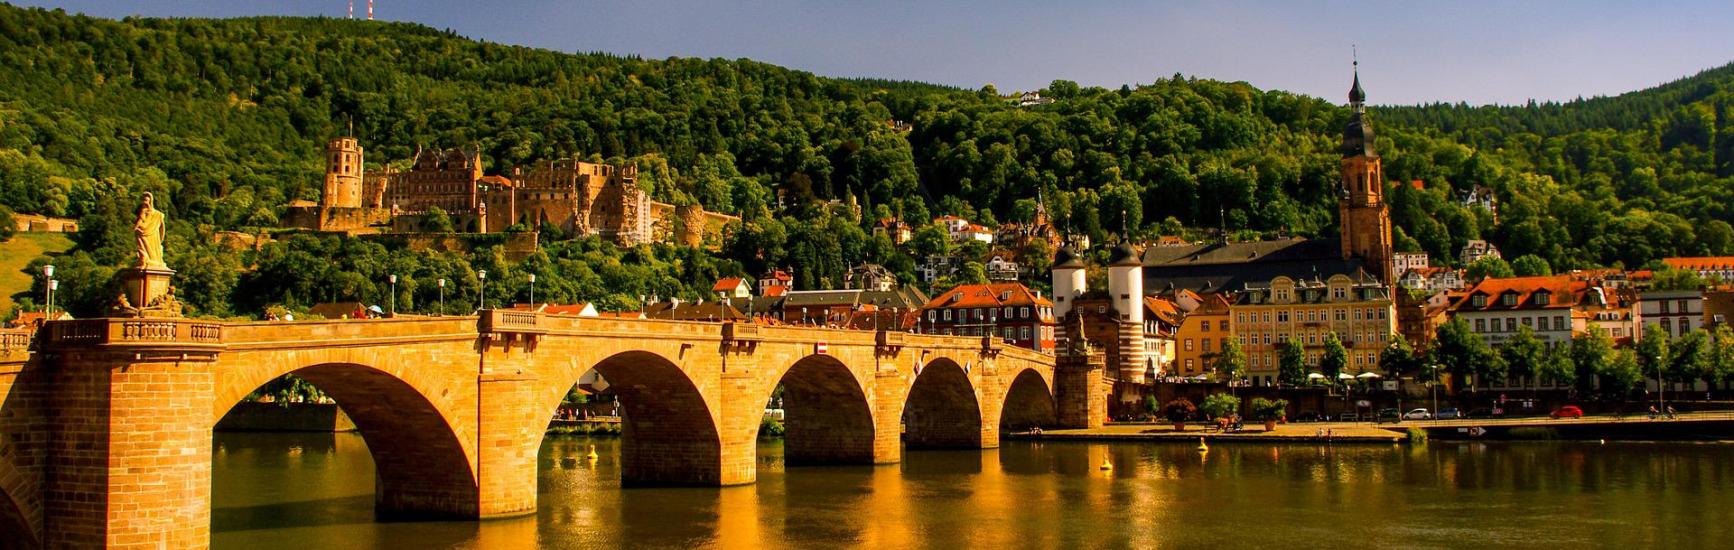 Brücke in Heidelberg in der Abenddämmerung